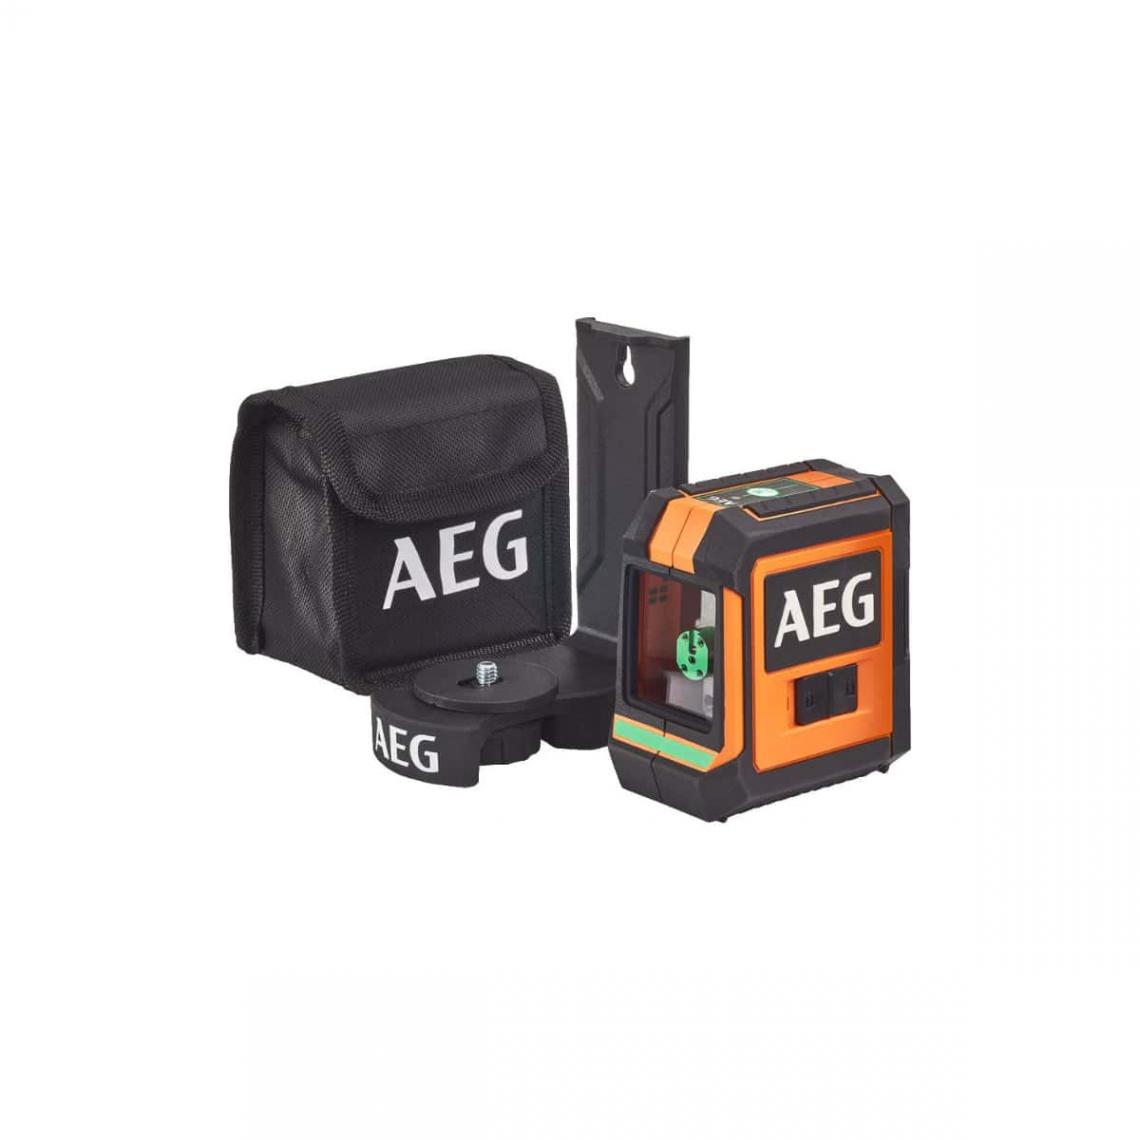 AEG - Appareil de mesure laser AEG électronique - 20m - CLG220-B - Niveaux lasers